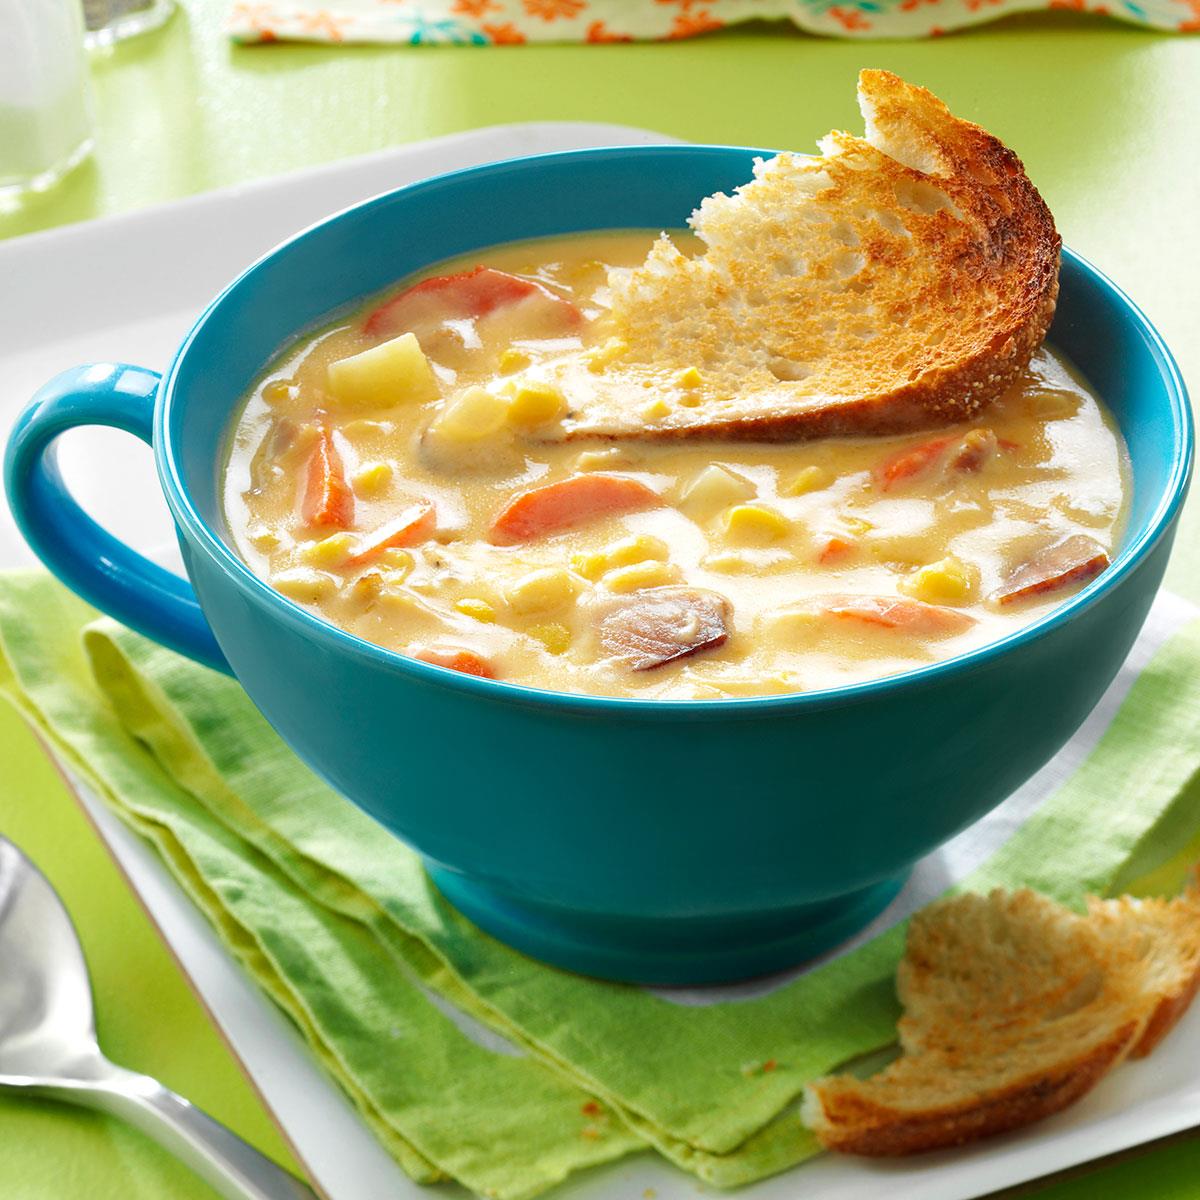 corn chowder soup